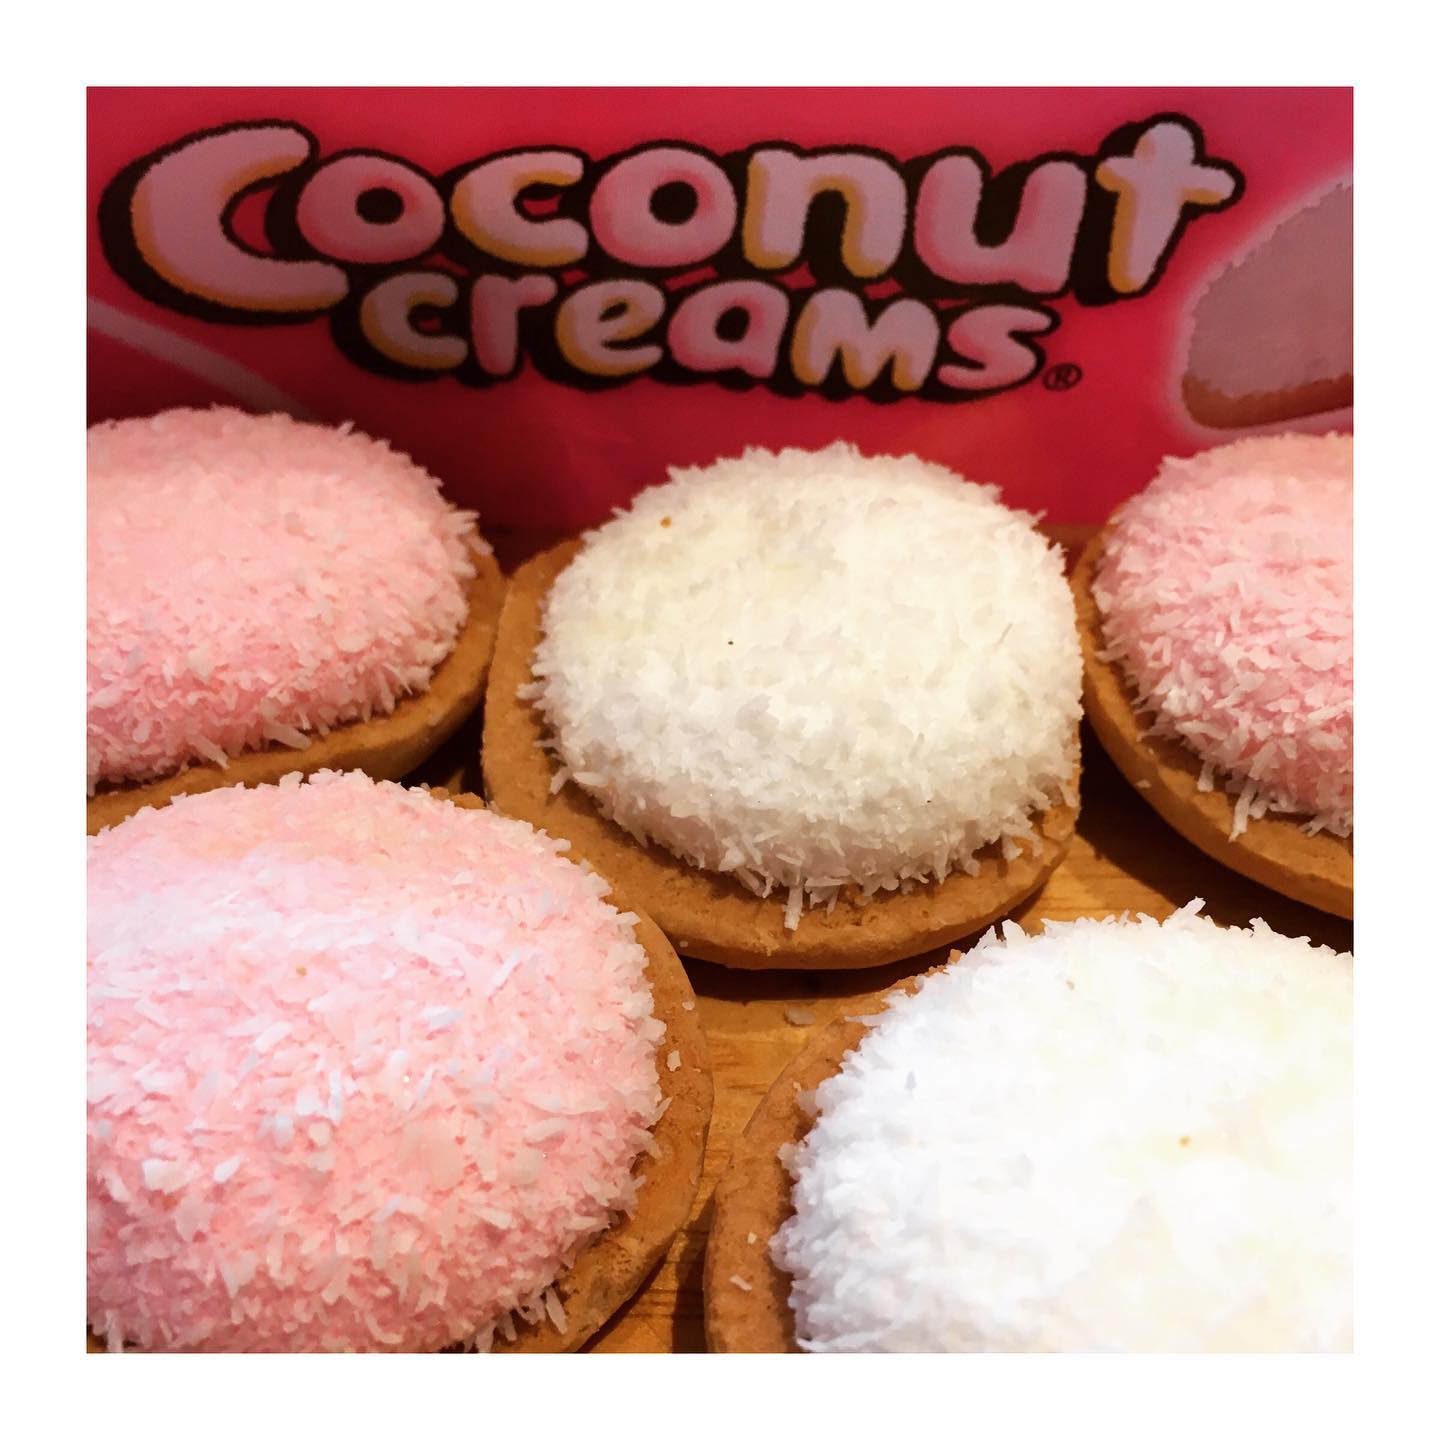 Coconut Creams